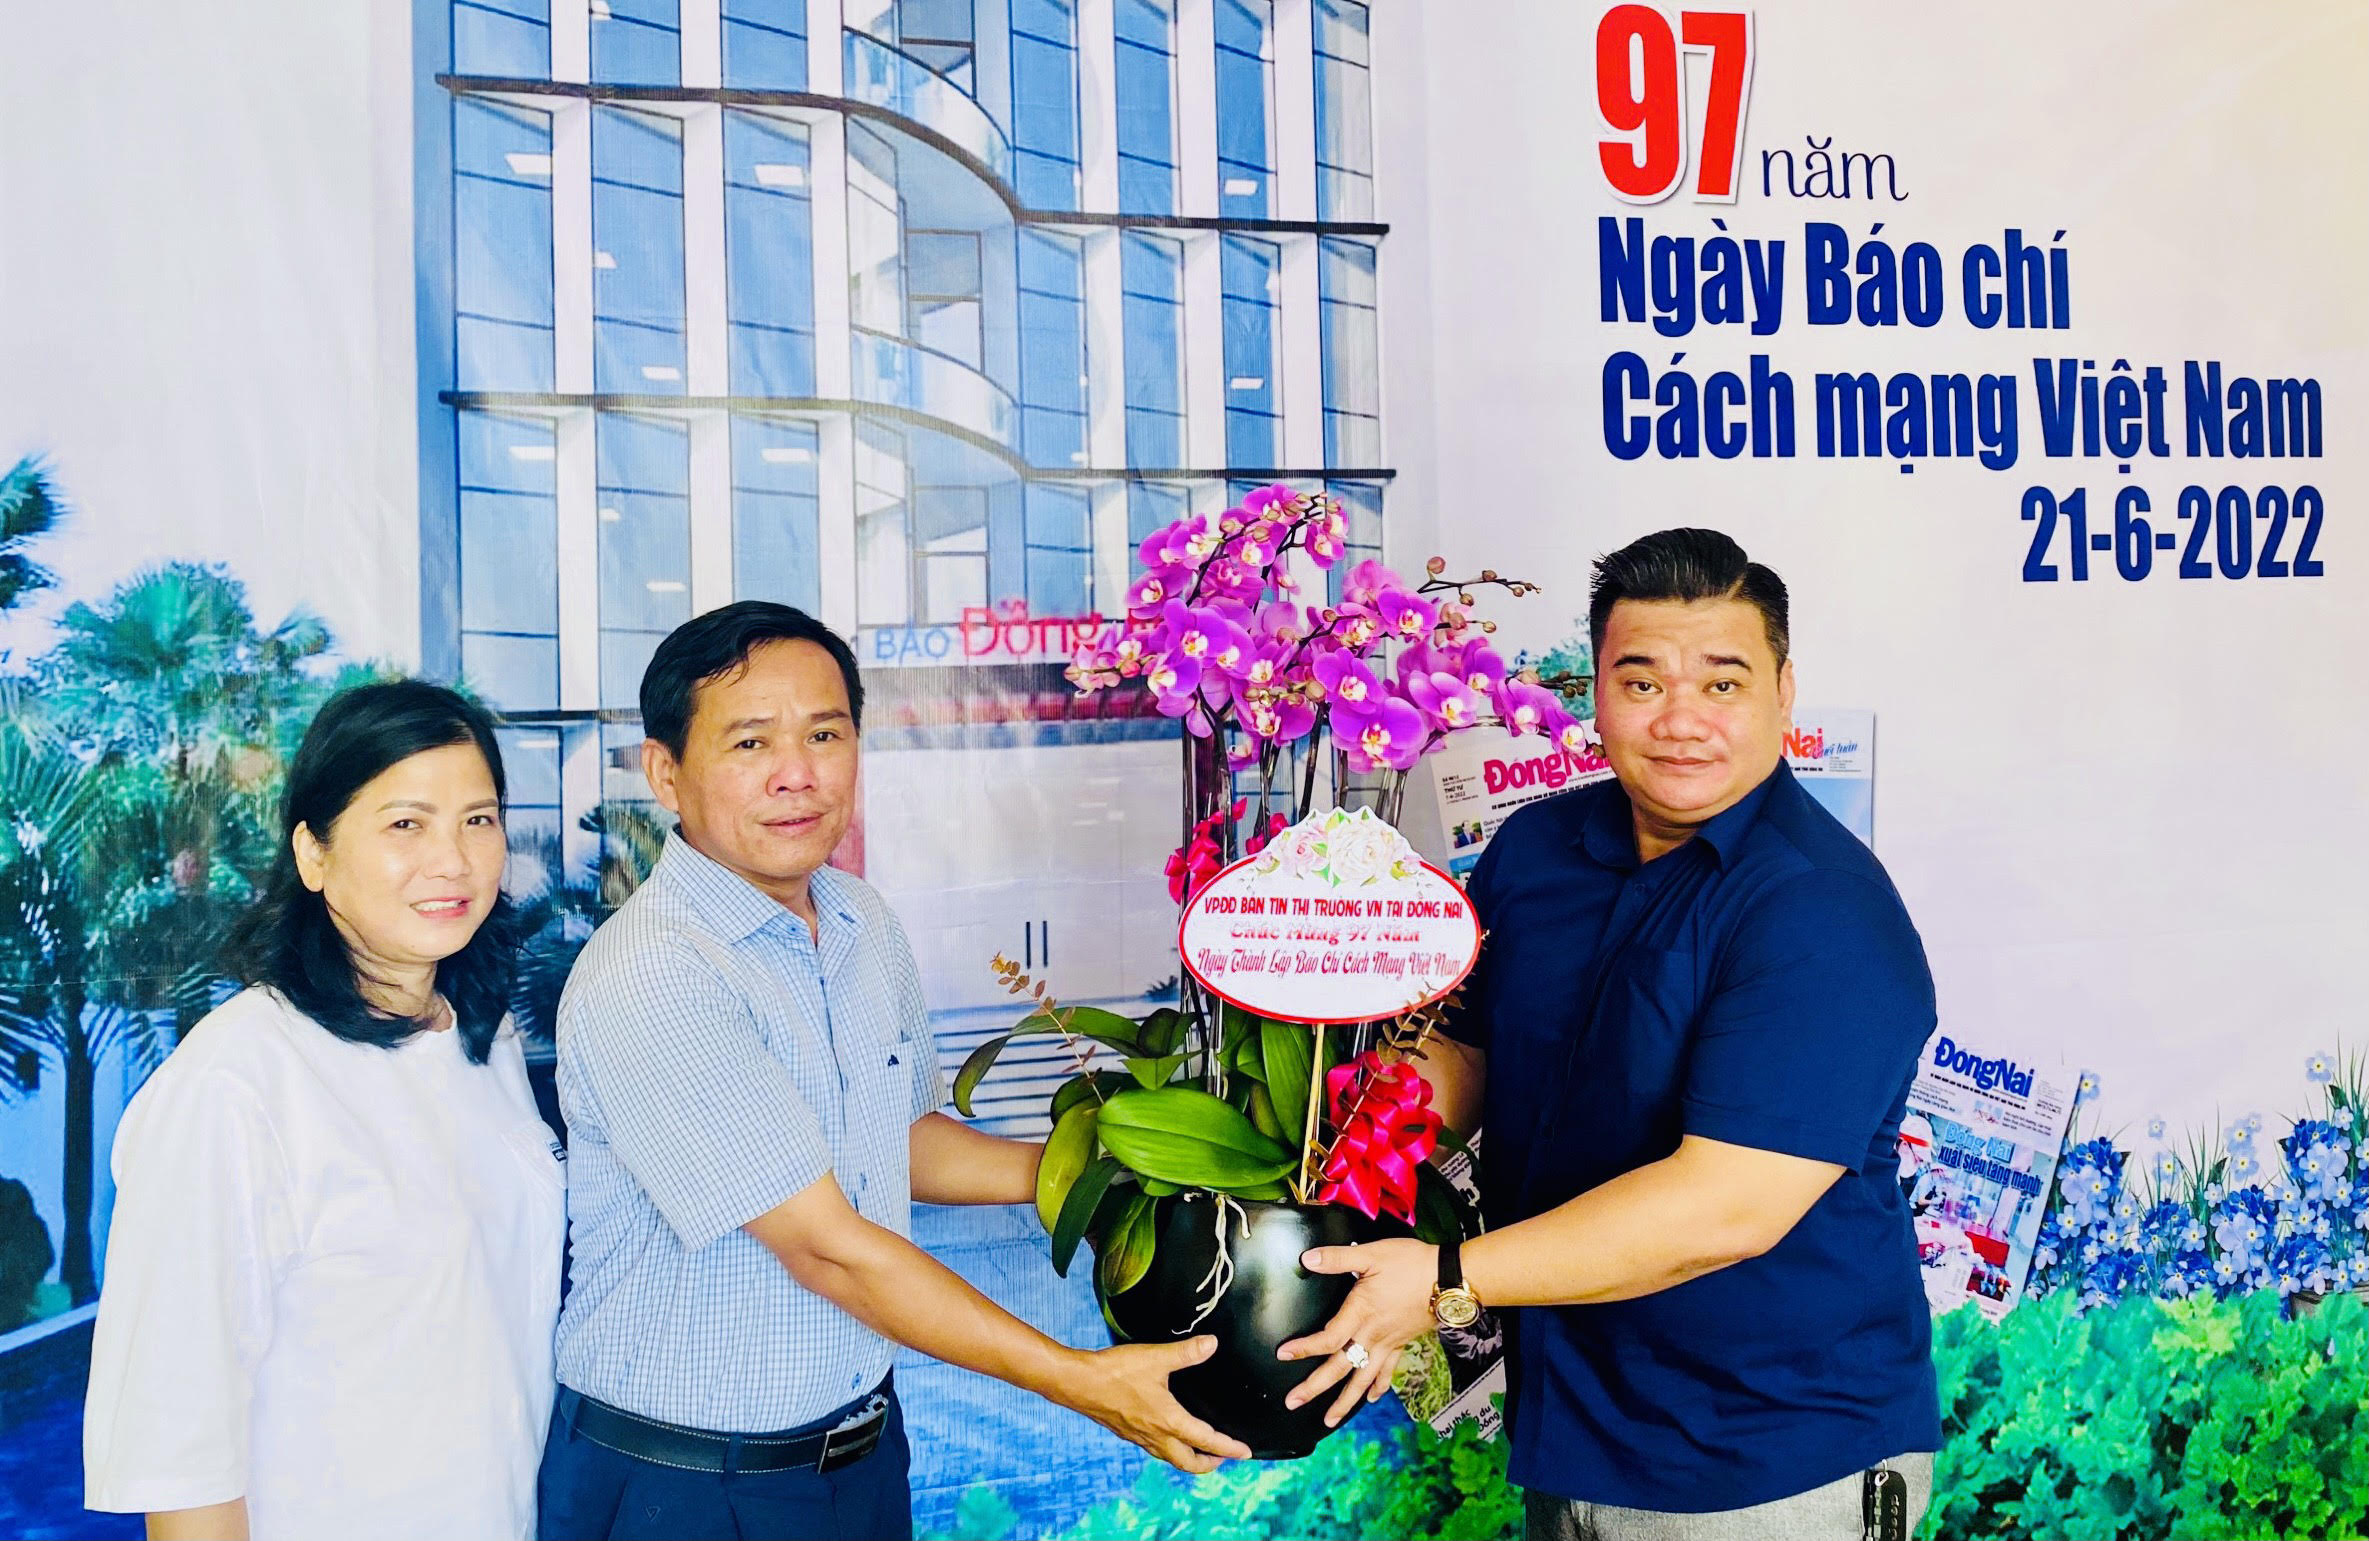 Bản tin Thị trường Việt Nam chúc mừng Báo Đồng Nai nhân dịp 97 năm ngày Báo chí Cách mạng Việt Nam 